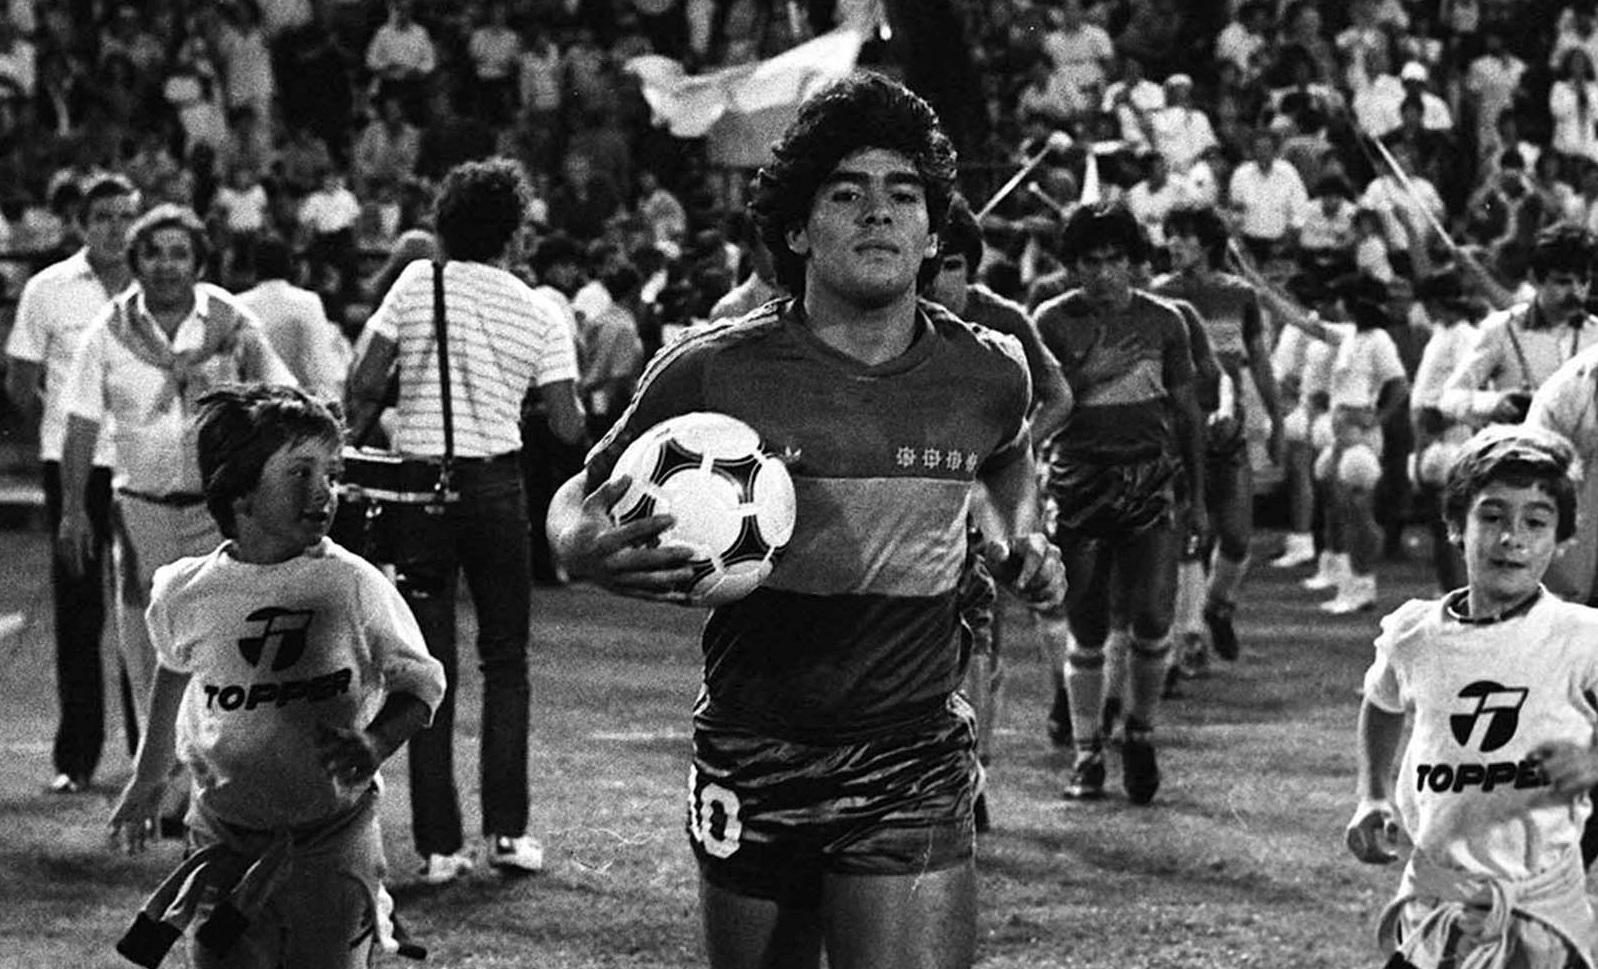 El 22 de febrero de 1981, hace cuatro décadas, Diego Armando Maradona, el mejor futbolista de todos los tiempos, comenzó su idilio con Boca cuando se puso por primera vez en forma oficial la camiseta que amó hasta el último de sus días en ocasión de un triunfo ante Talleres de Córdoba por 4-1 por el torneo Metropolitano, en el inicio de la conquista de su único título en la Argentina.
Foto: Archivo/Télam/VIC